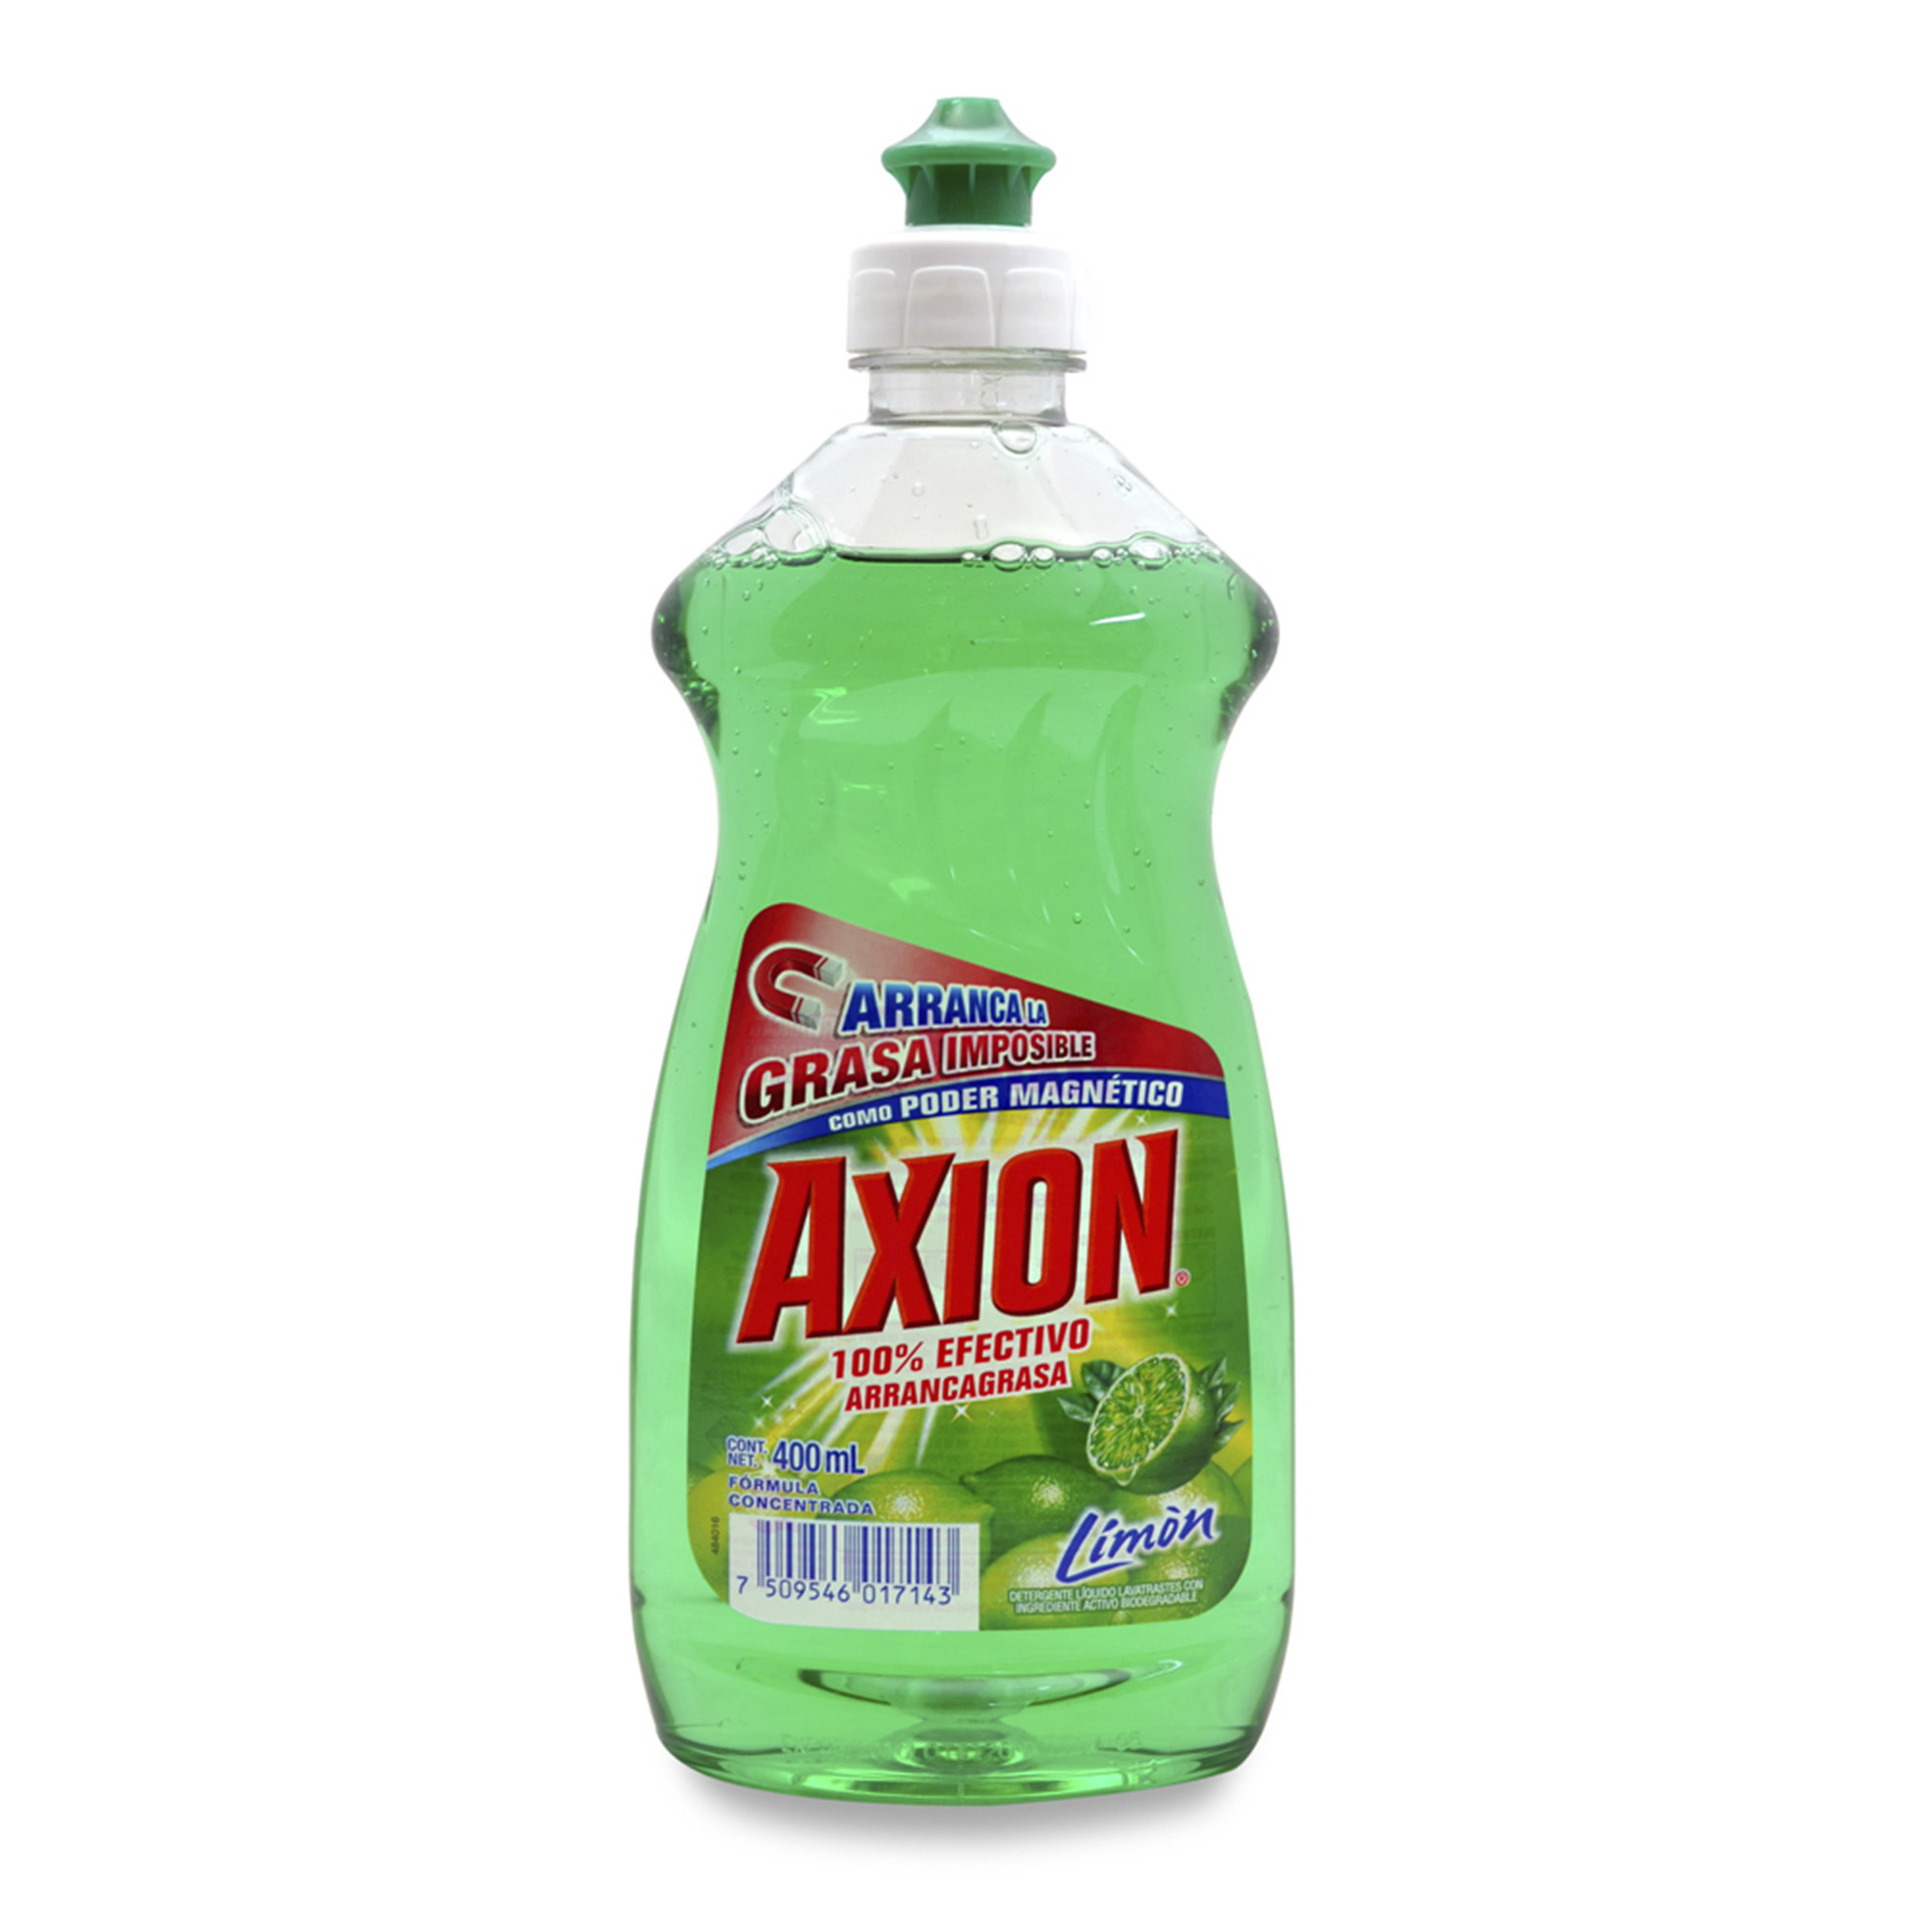 Axion Liquido 400ml en canasta en casa